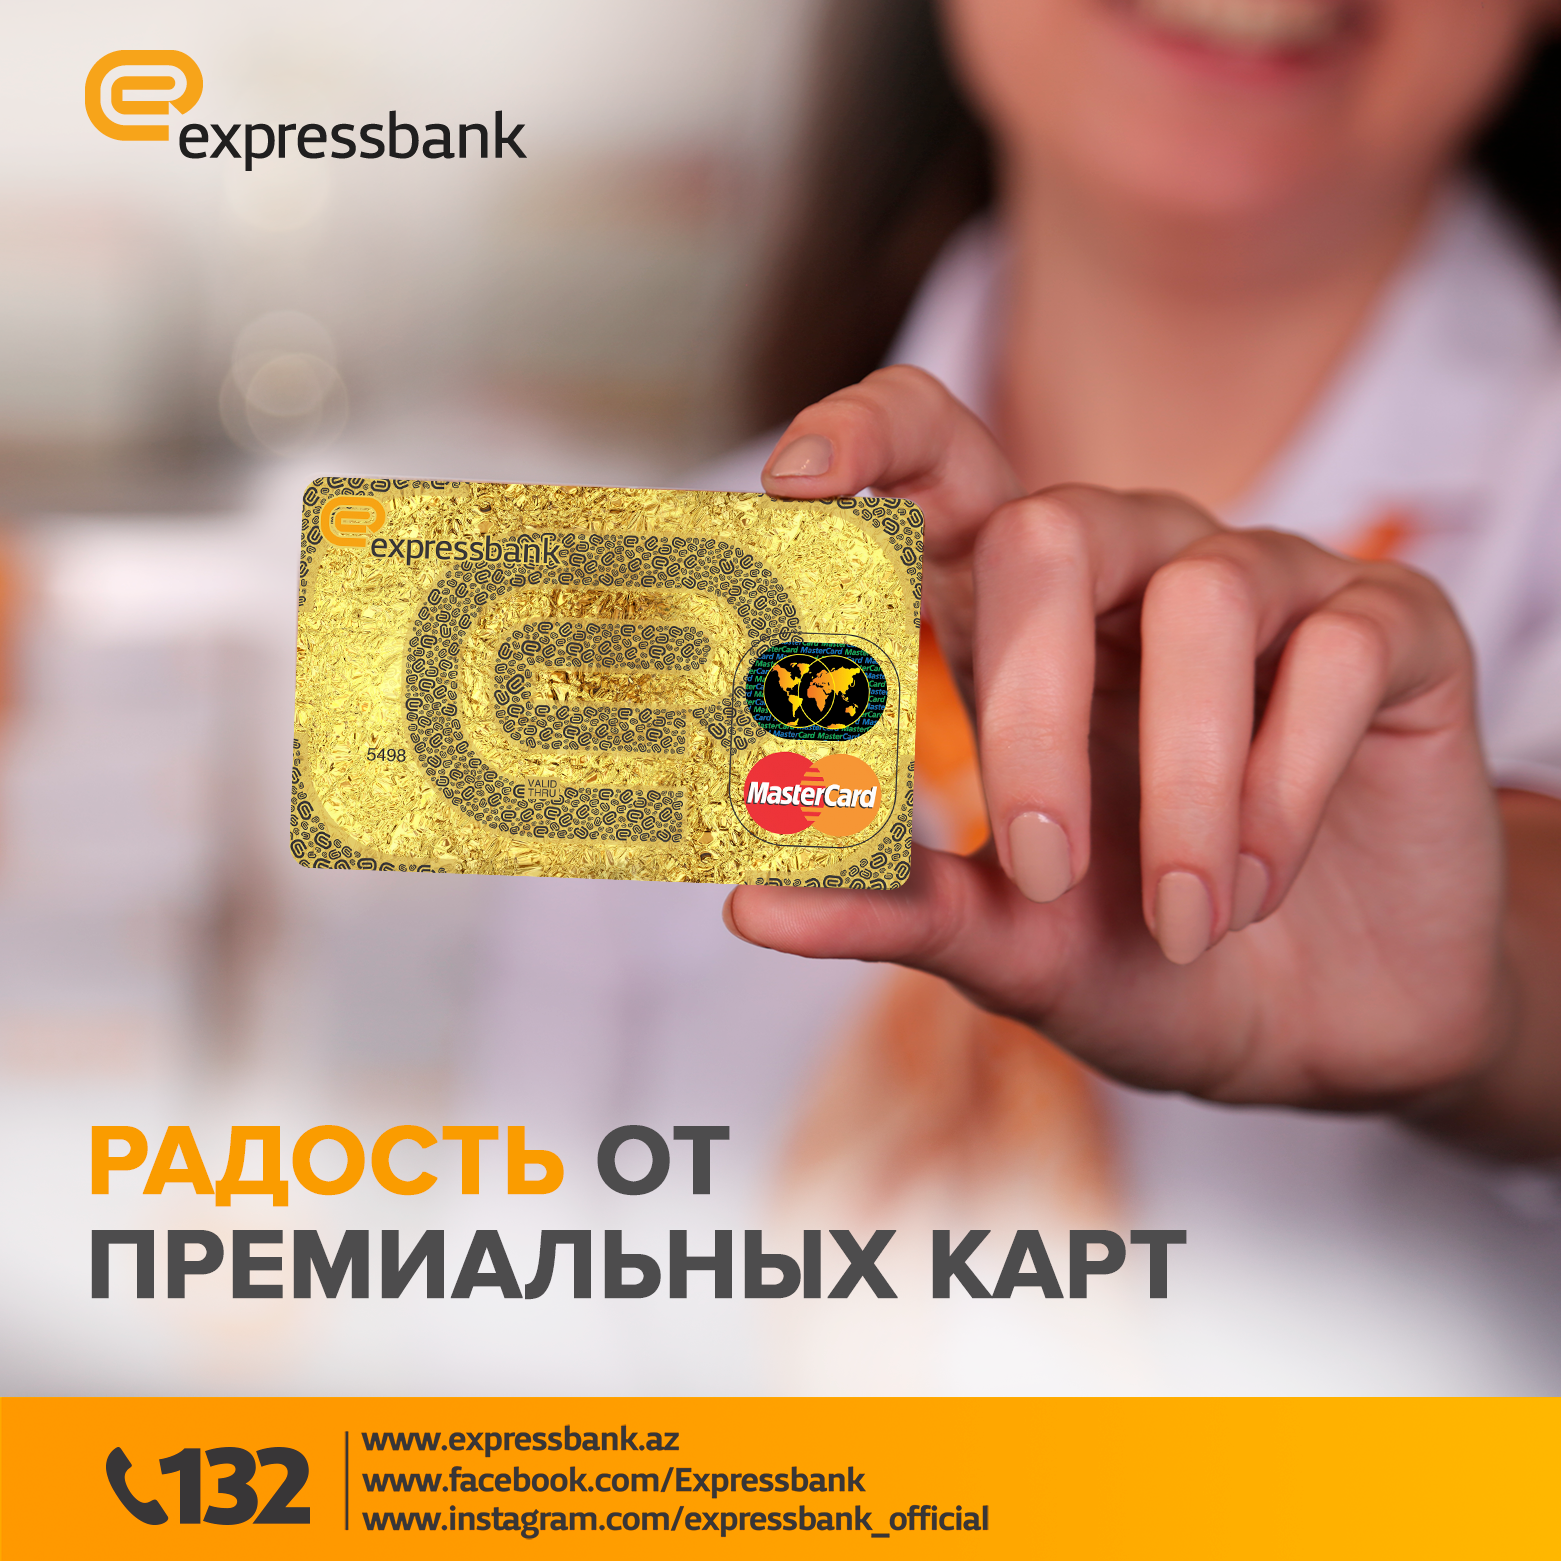 Expressbank проводит кампанию "Радость от премиальных карт"